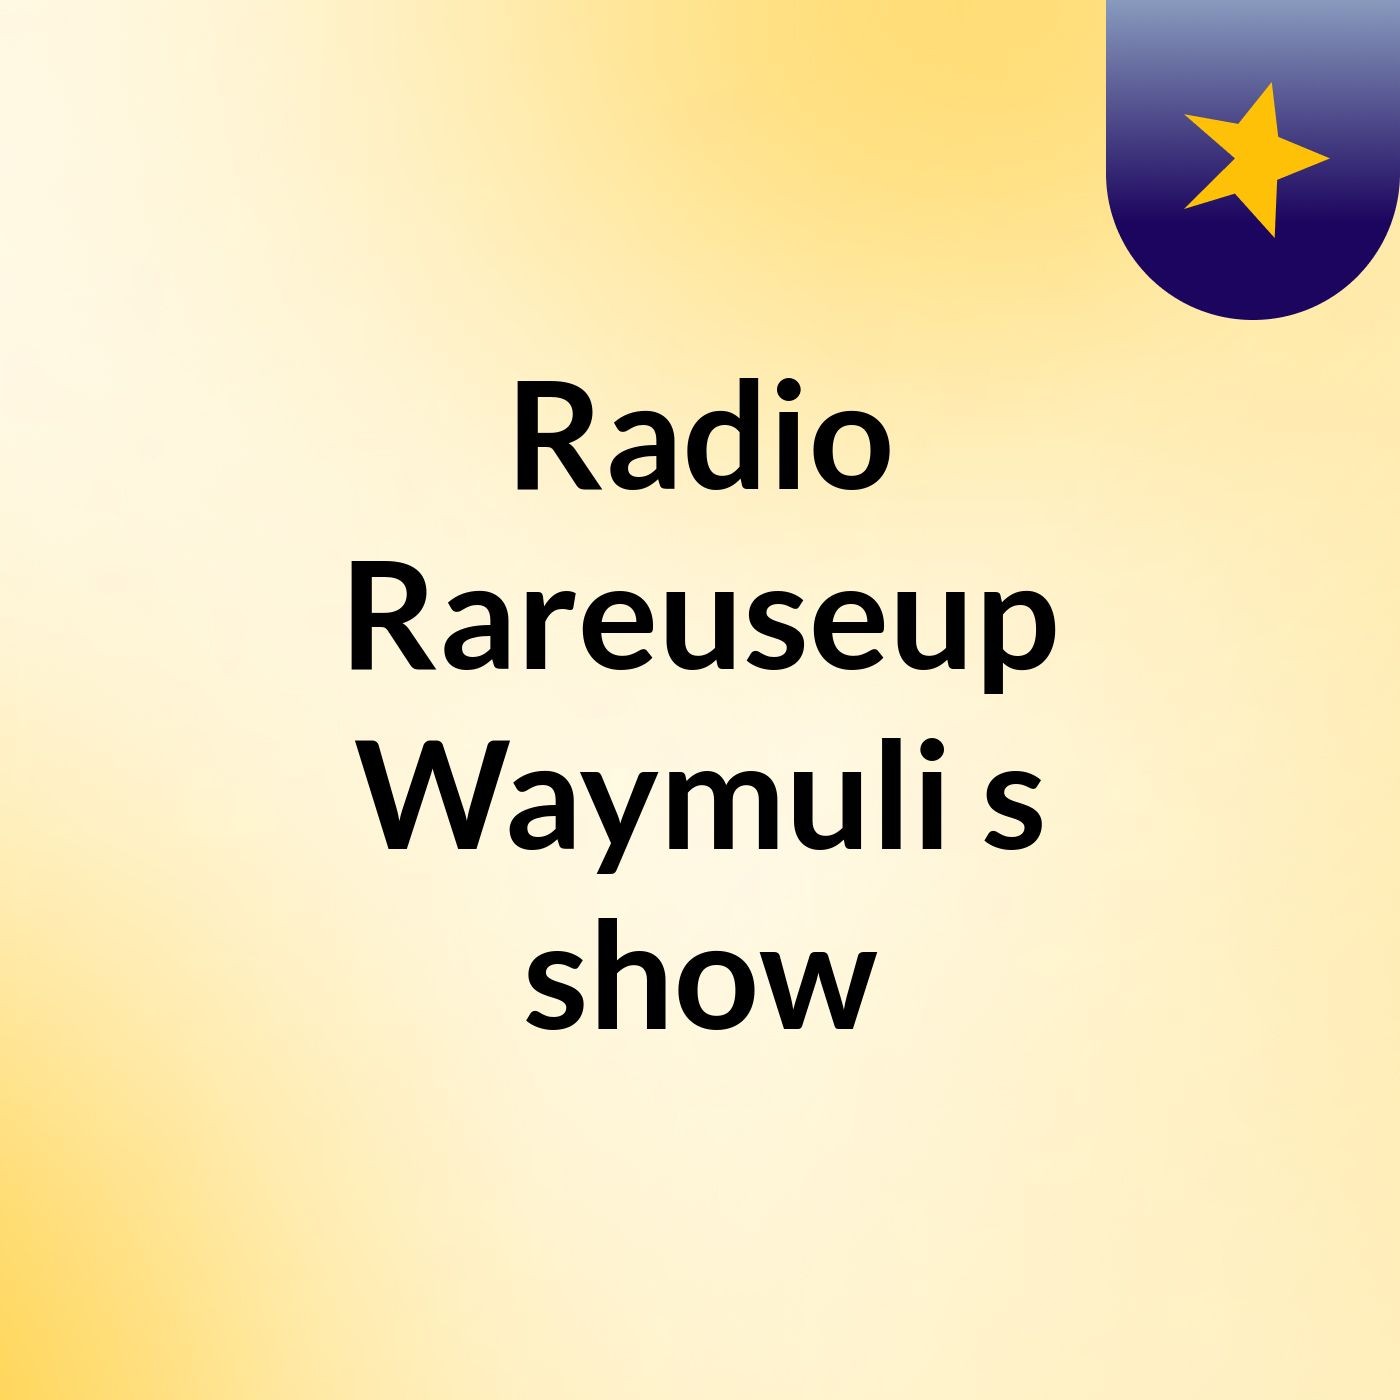 Radio Rareuseup Waymuli's show